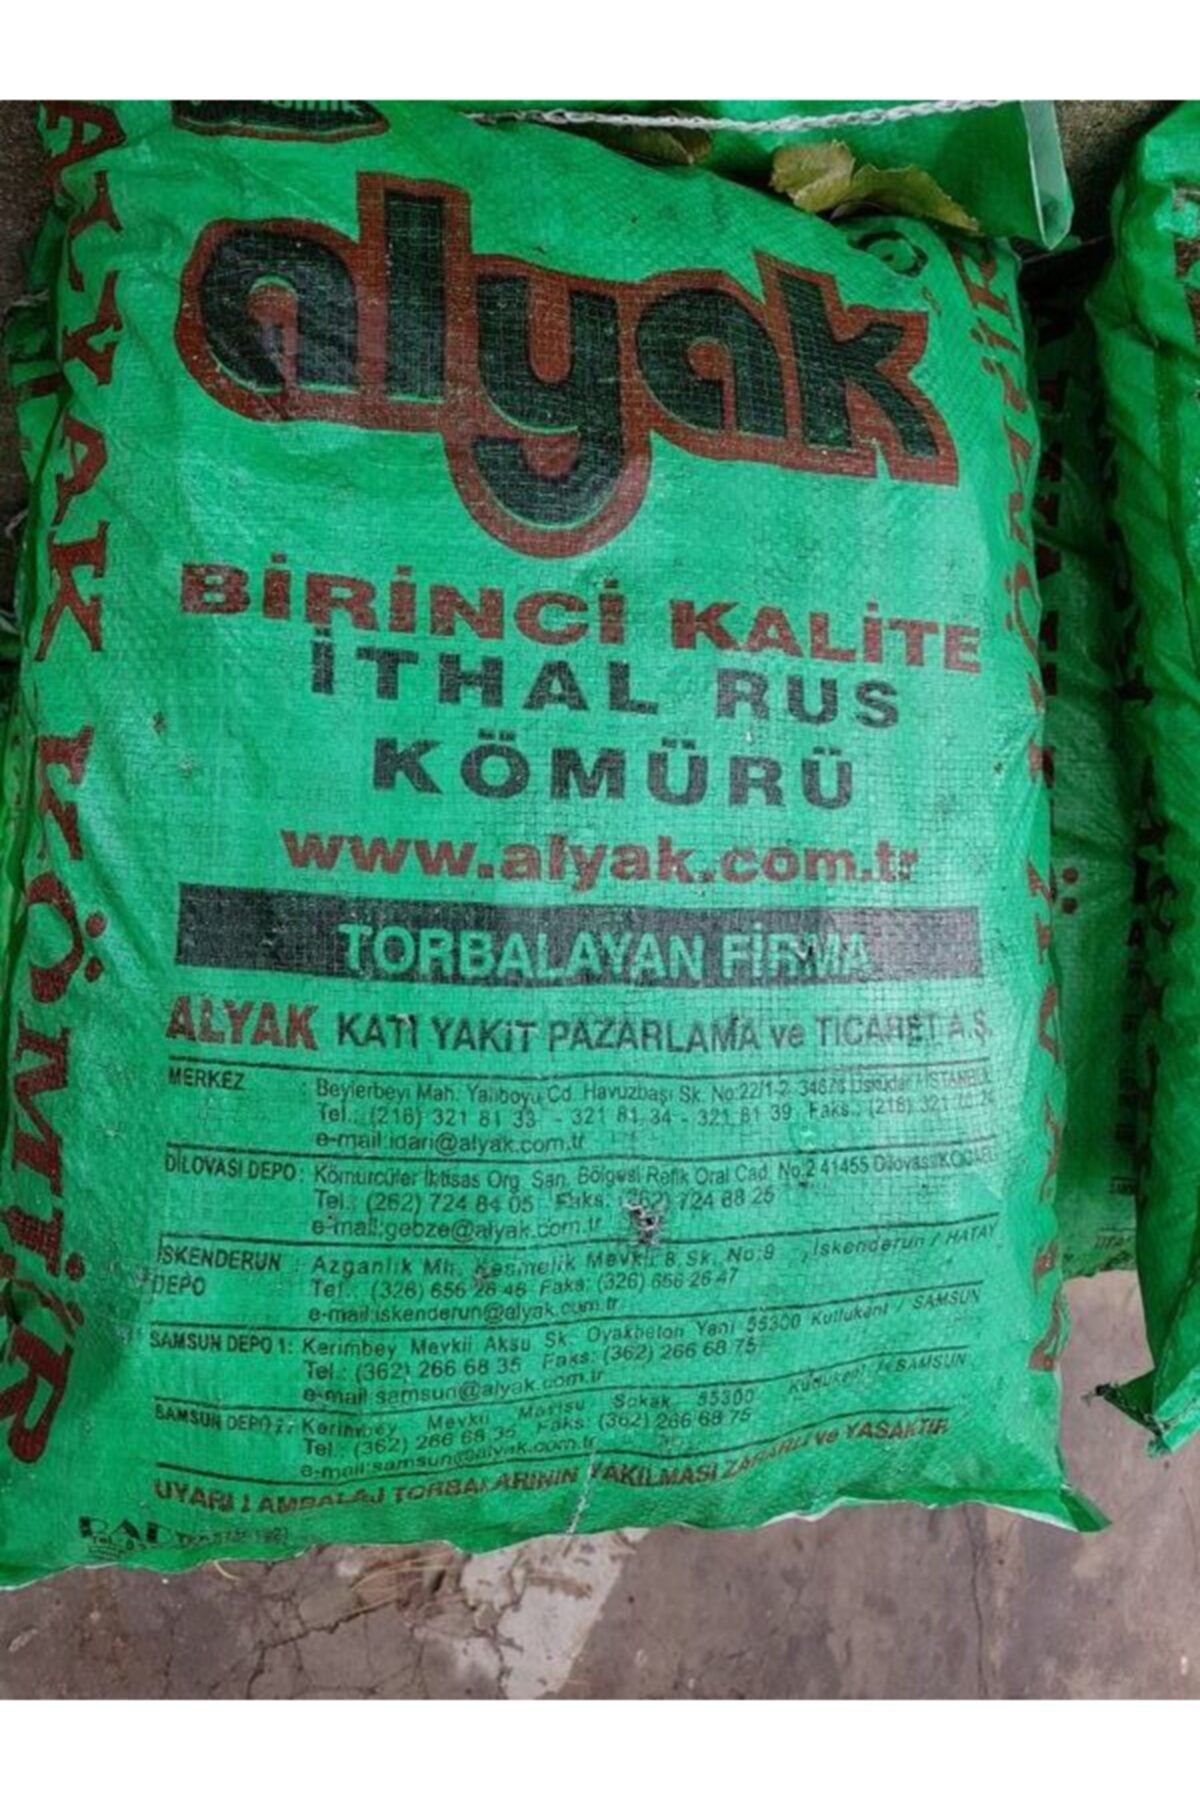 ALYAK Ithal Rus Soba Kömürü 1.kalite 25kg (8000kcal)